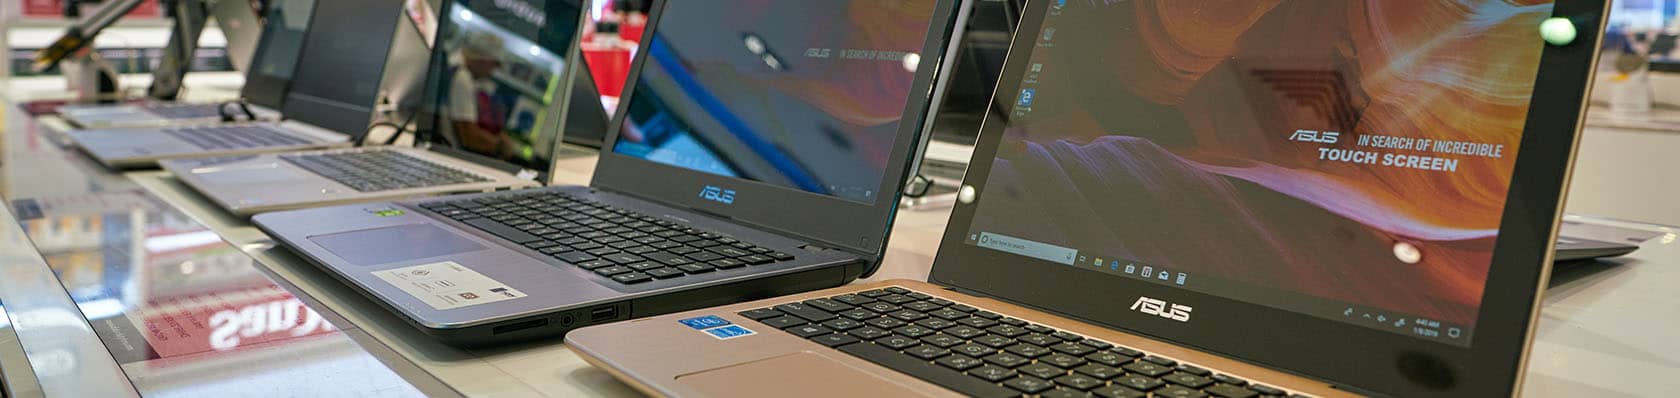 Comment choisir son ordinateur portable Asus Vivobook ou Zenbook?